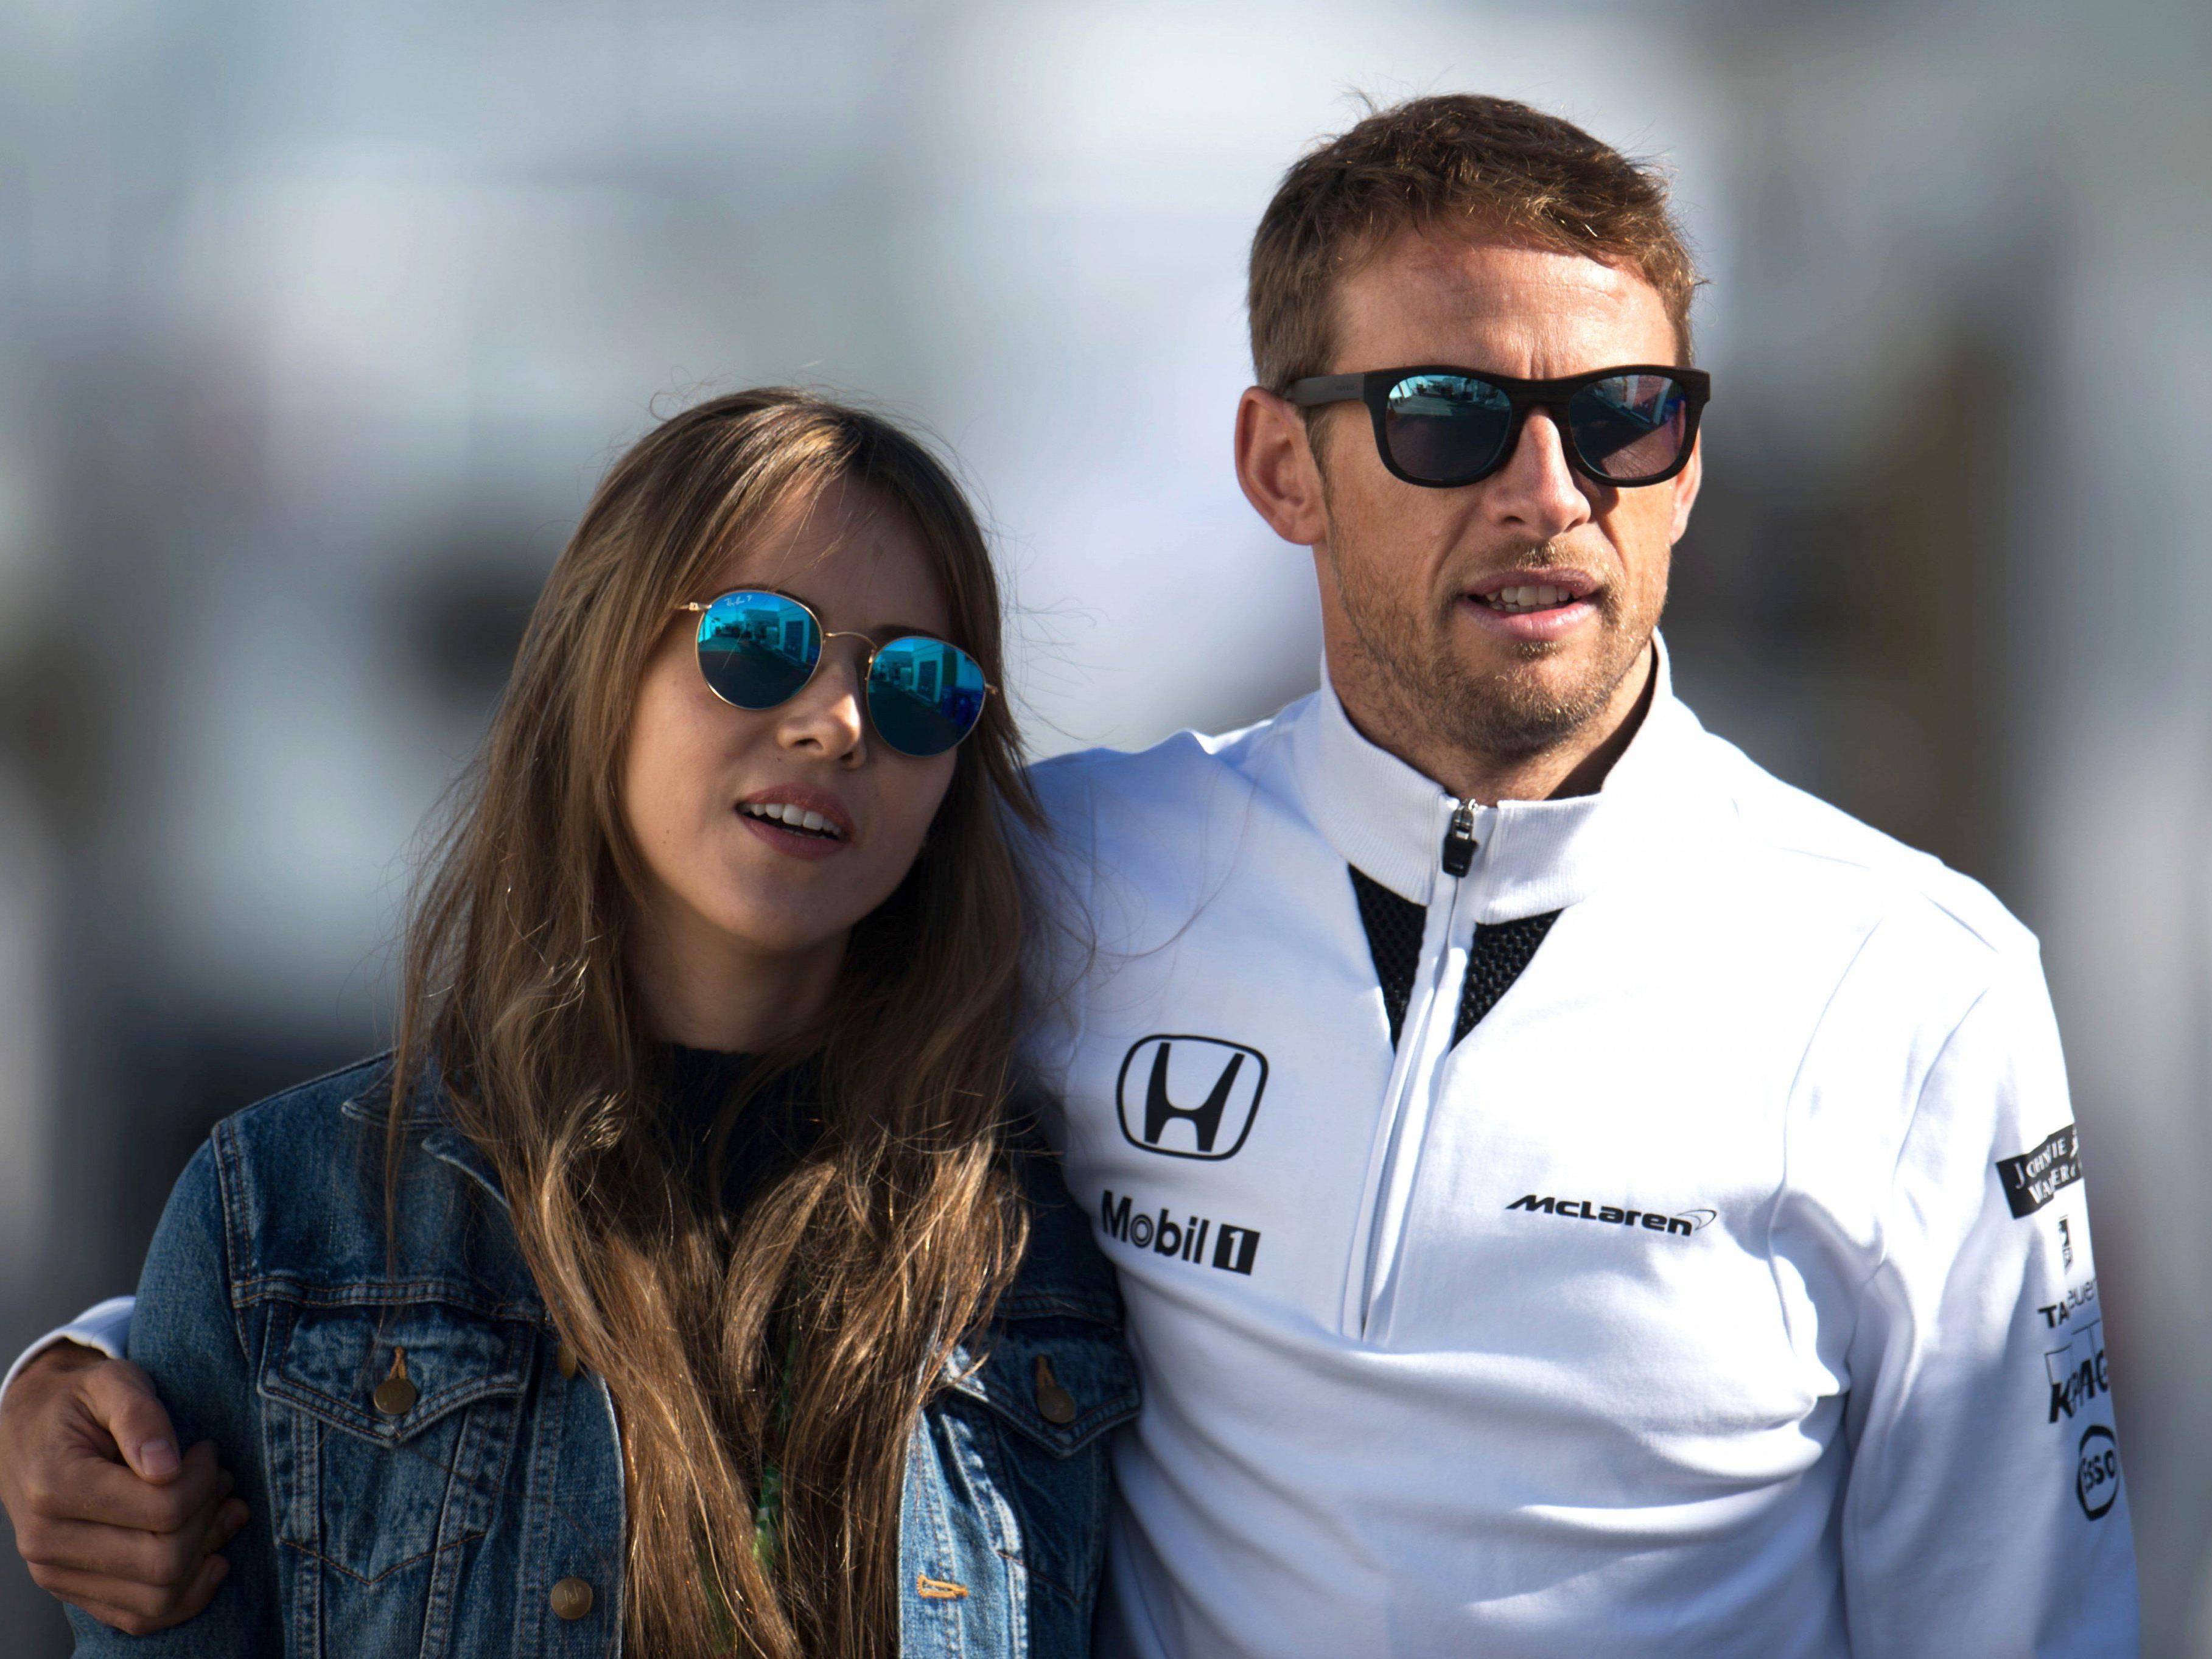 Vor zwei Wochen wurden Jenson Button und seine Freundin ausgeraubt